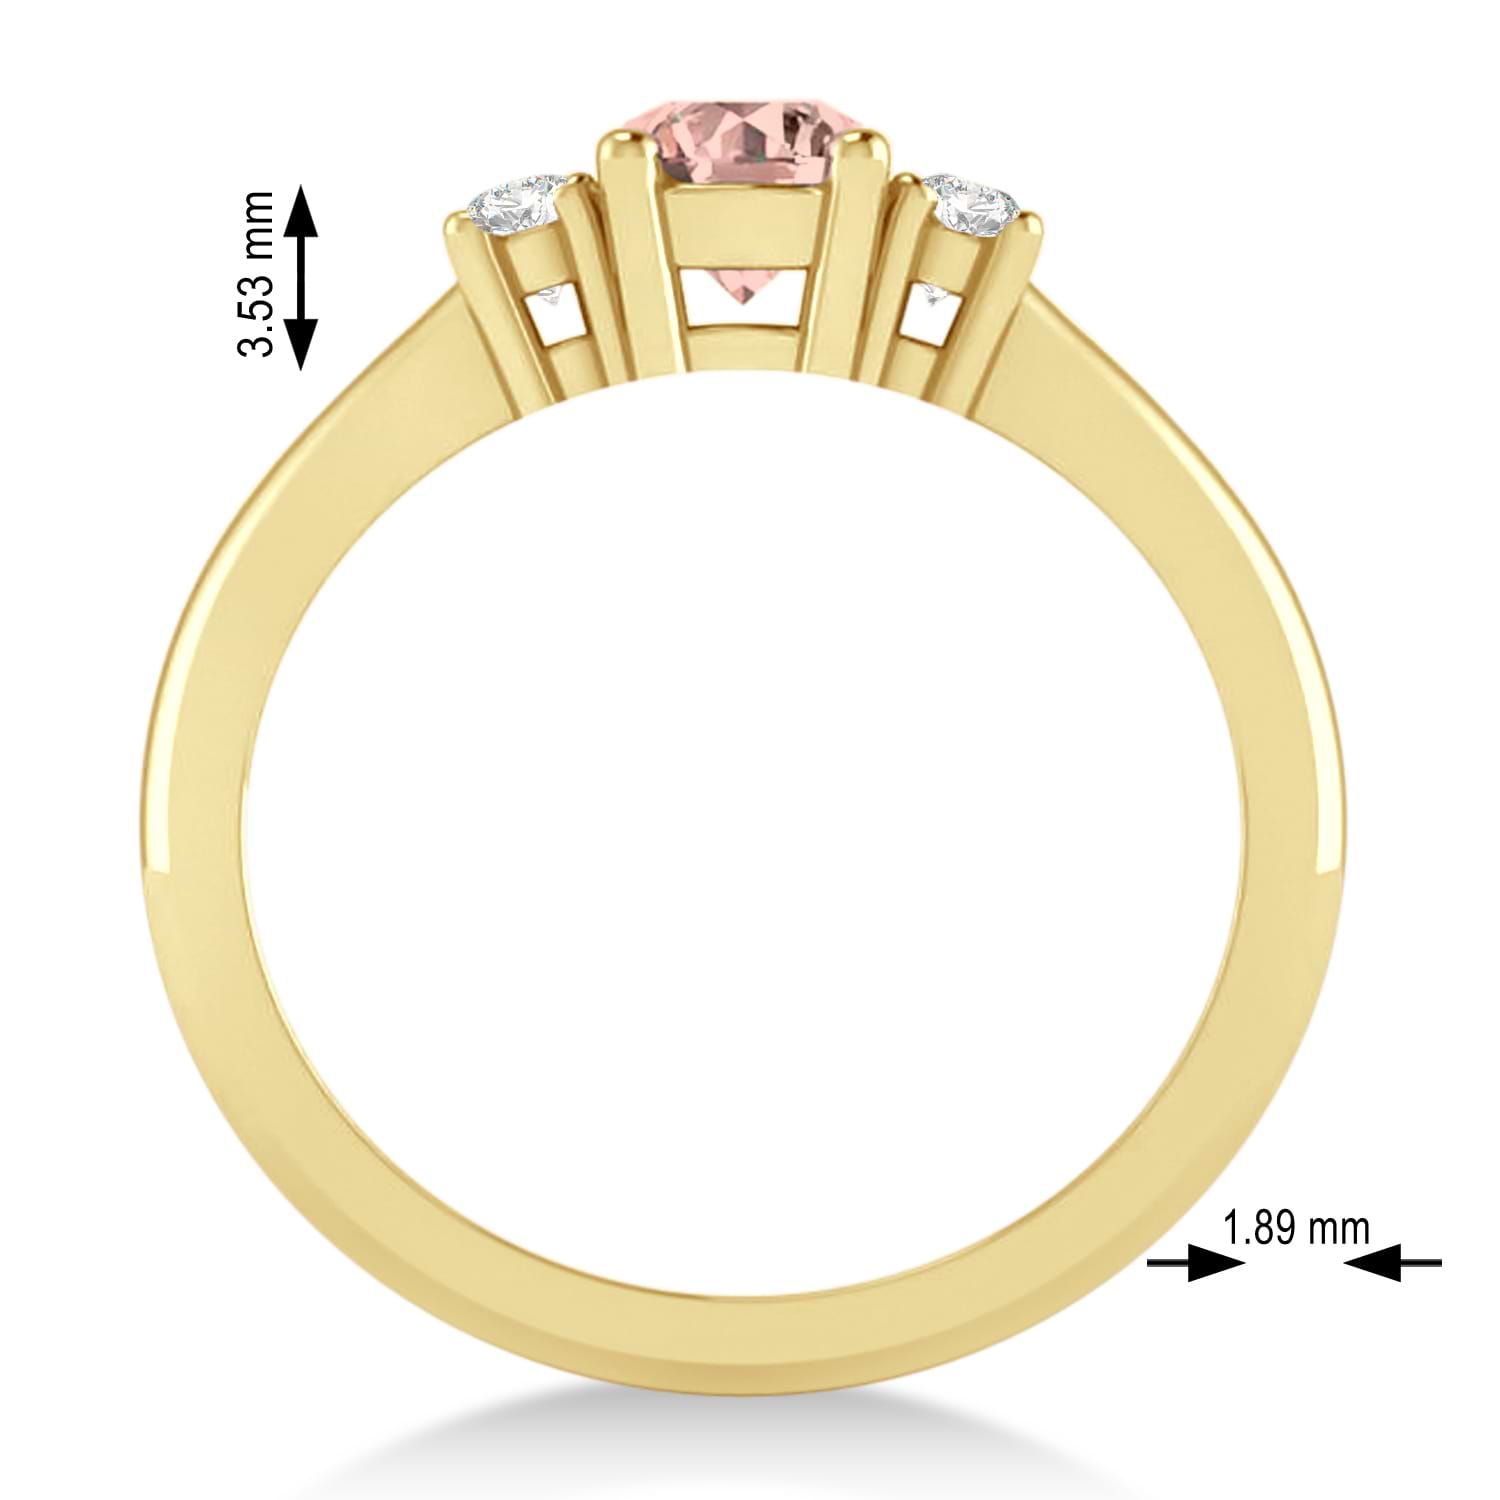 Round Morganite & Diamond Three-Stone Engagement Ring 14k Yellow Gold (0.60ct)